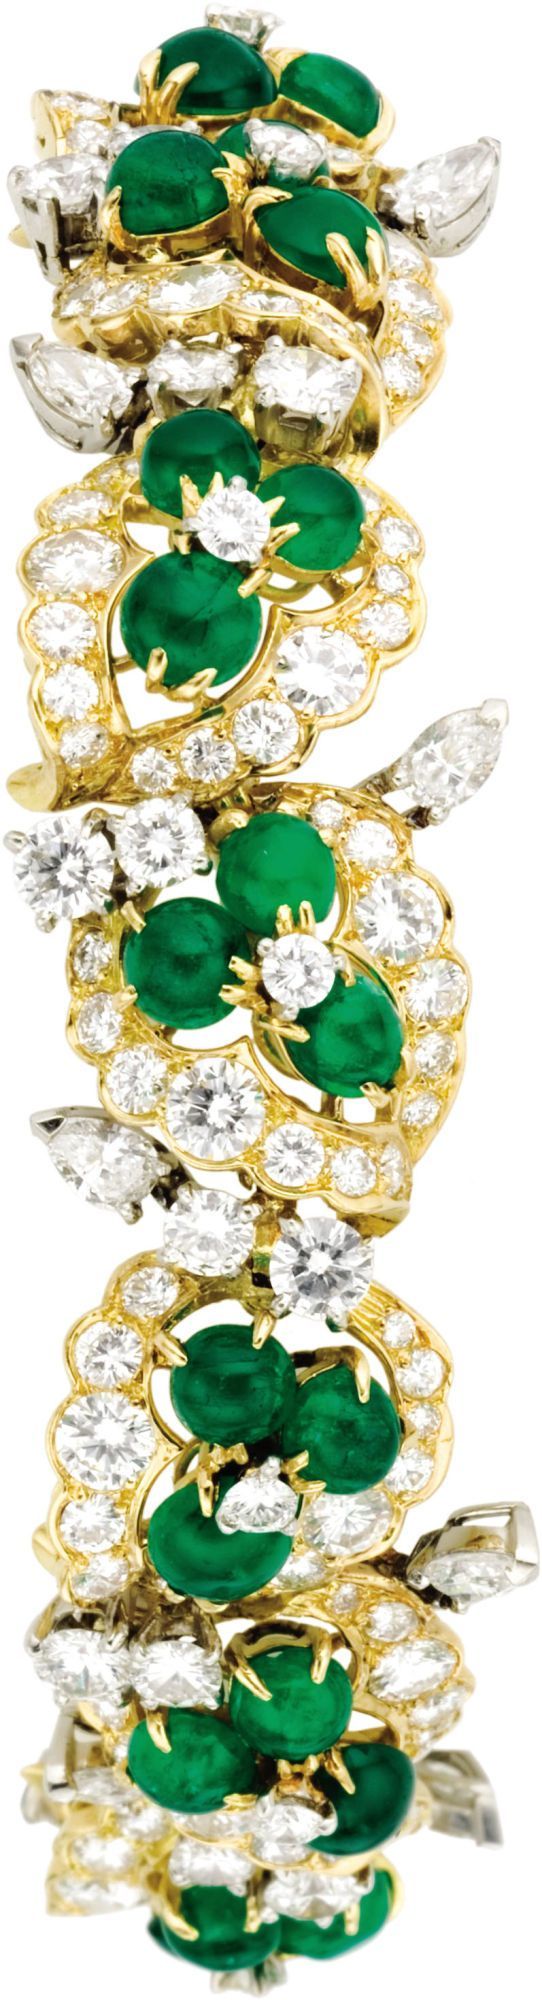 Frivolous Fabulous - French Diamonds and Emeralds